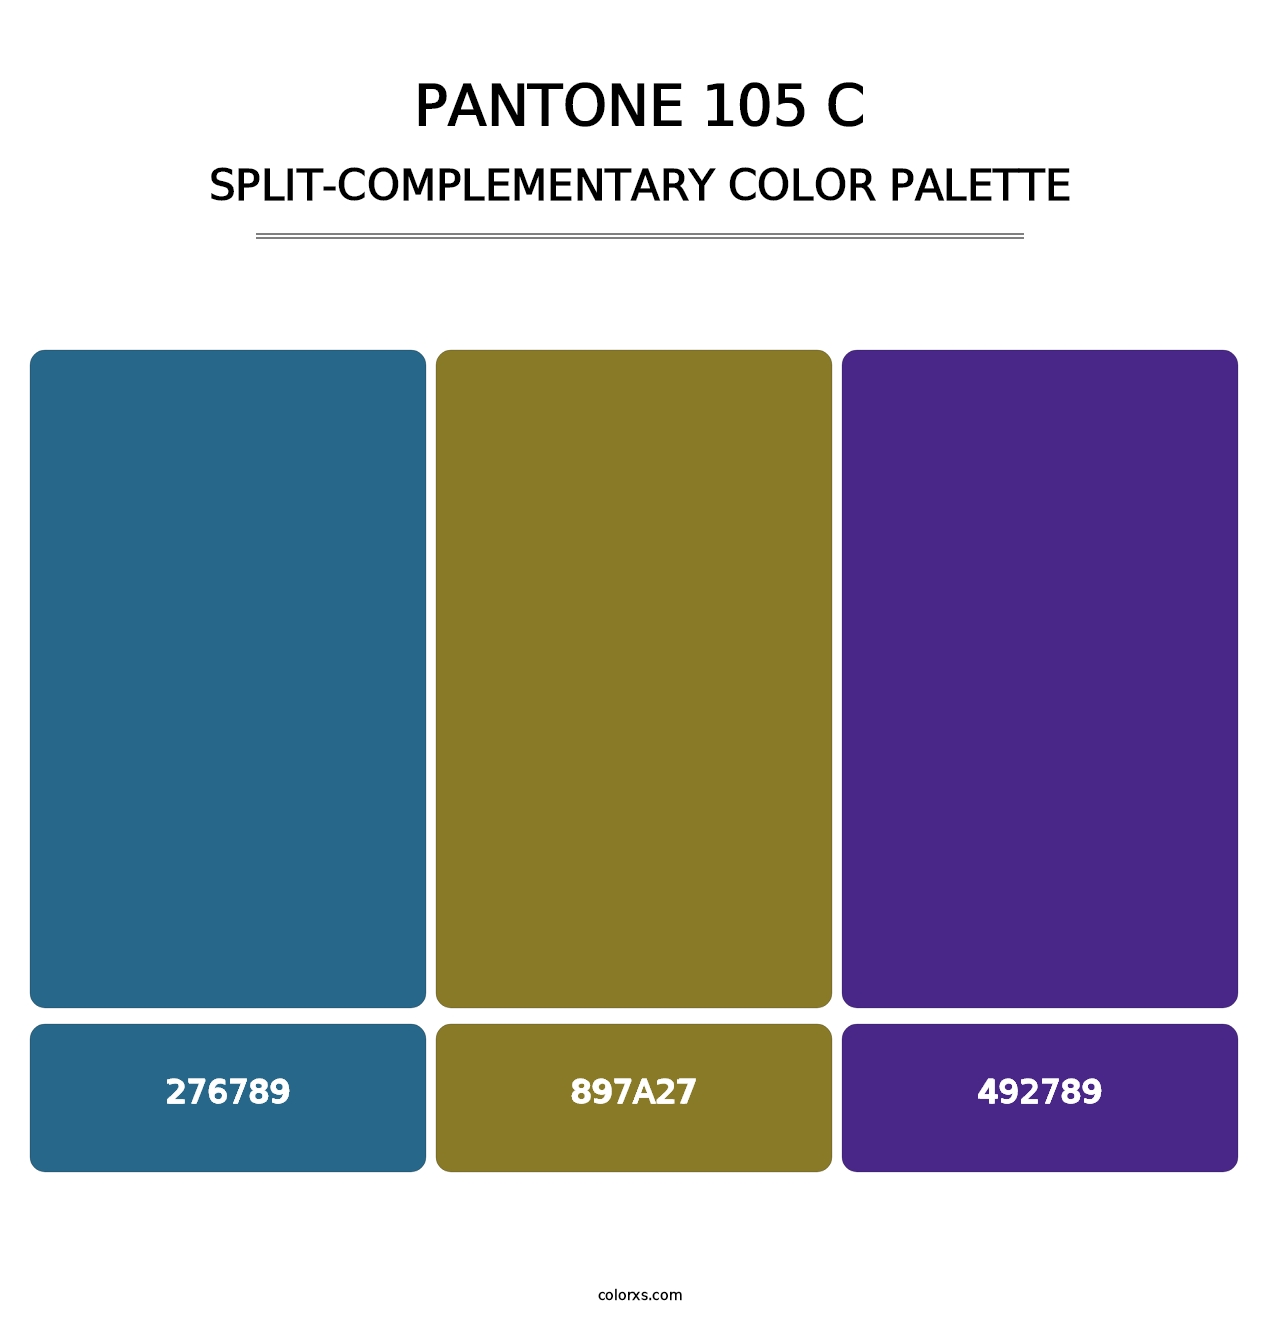 PANTONE 105 C - Split-Complementary Color Palette